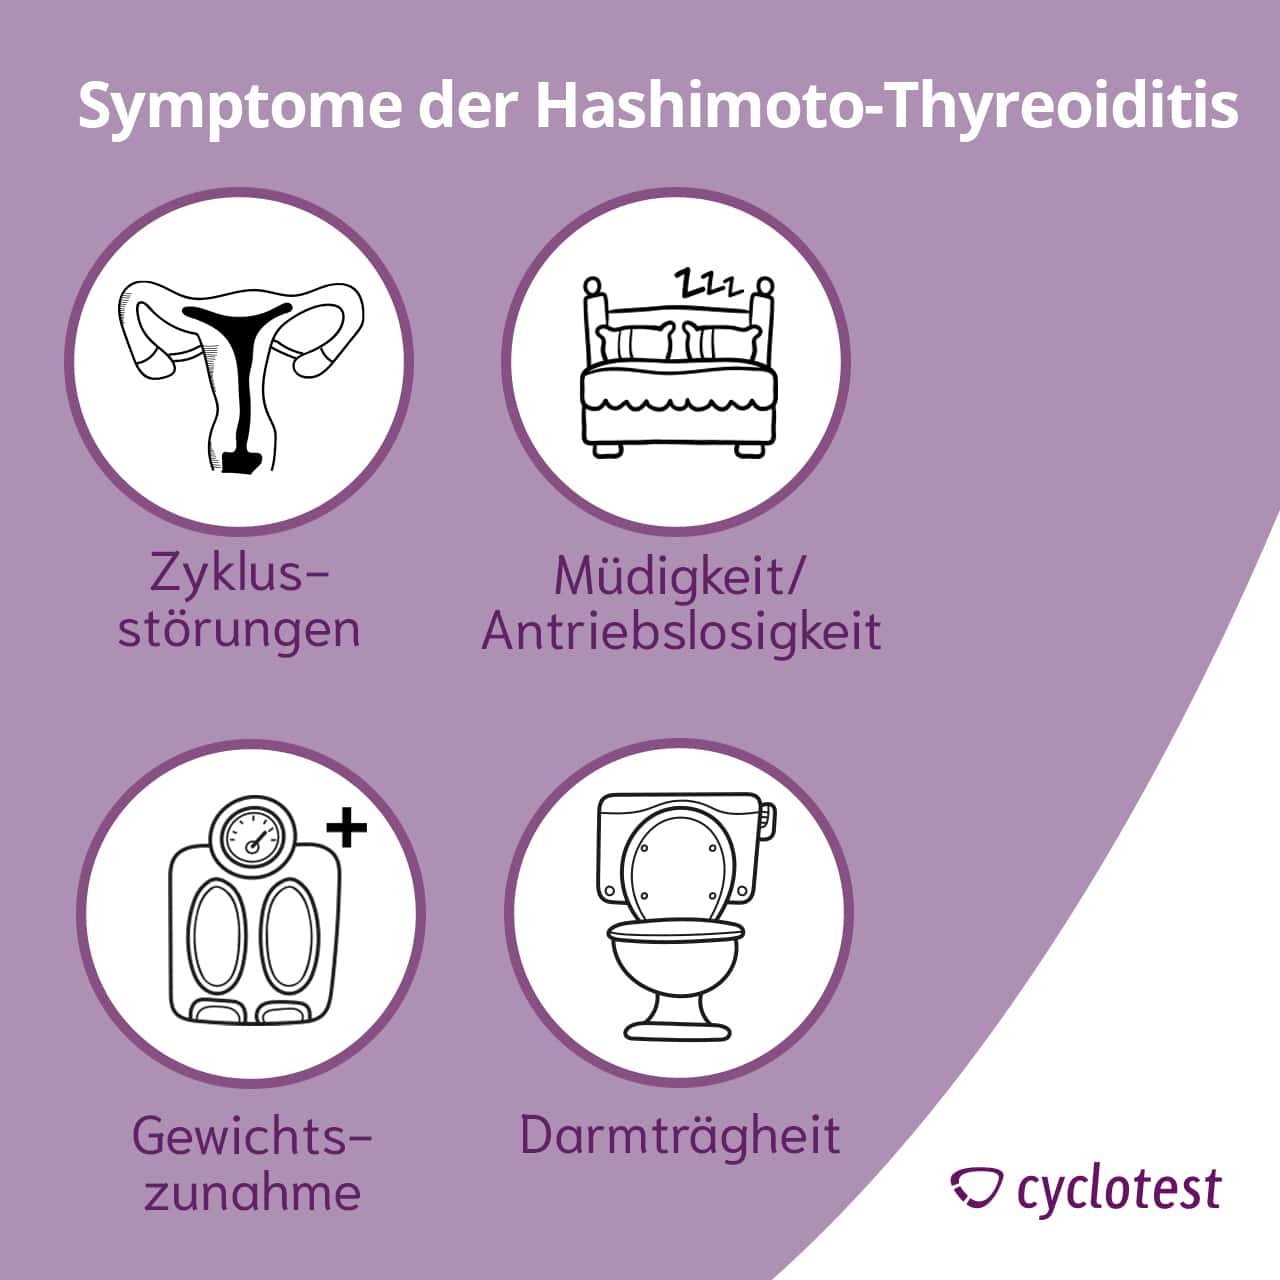 Die 4 häufigsten Symptome der Hashimoto-Thyreoiditis.